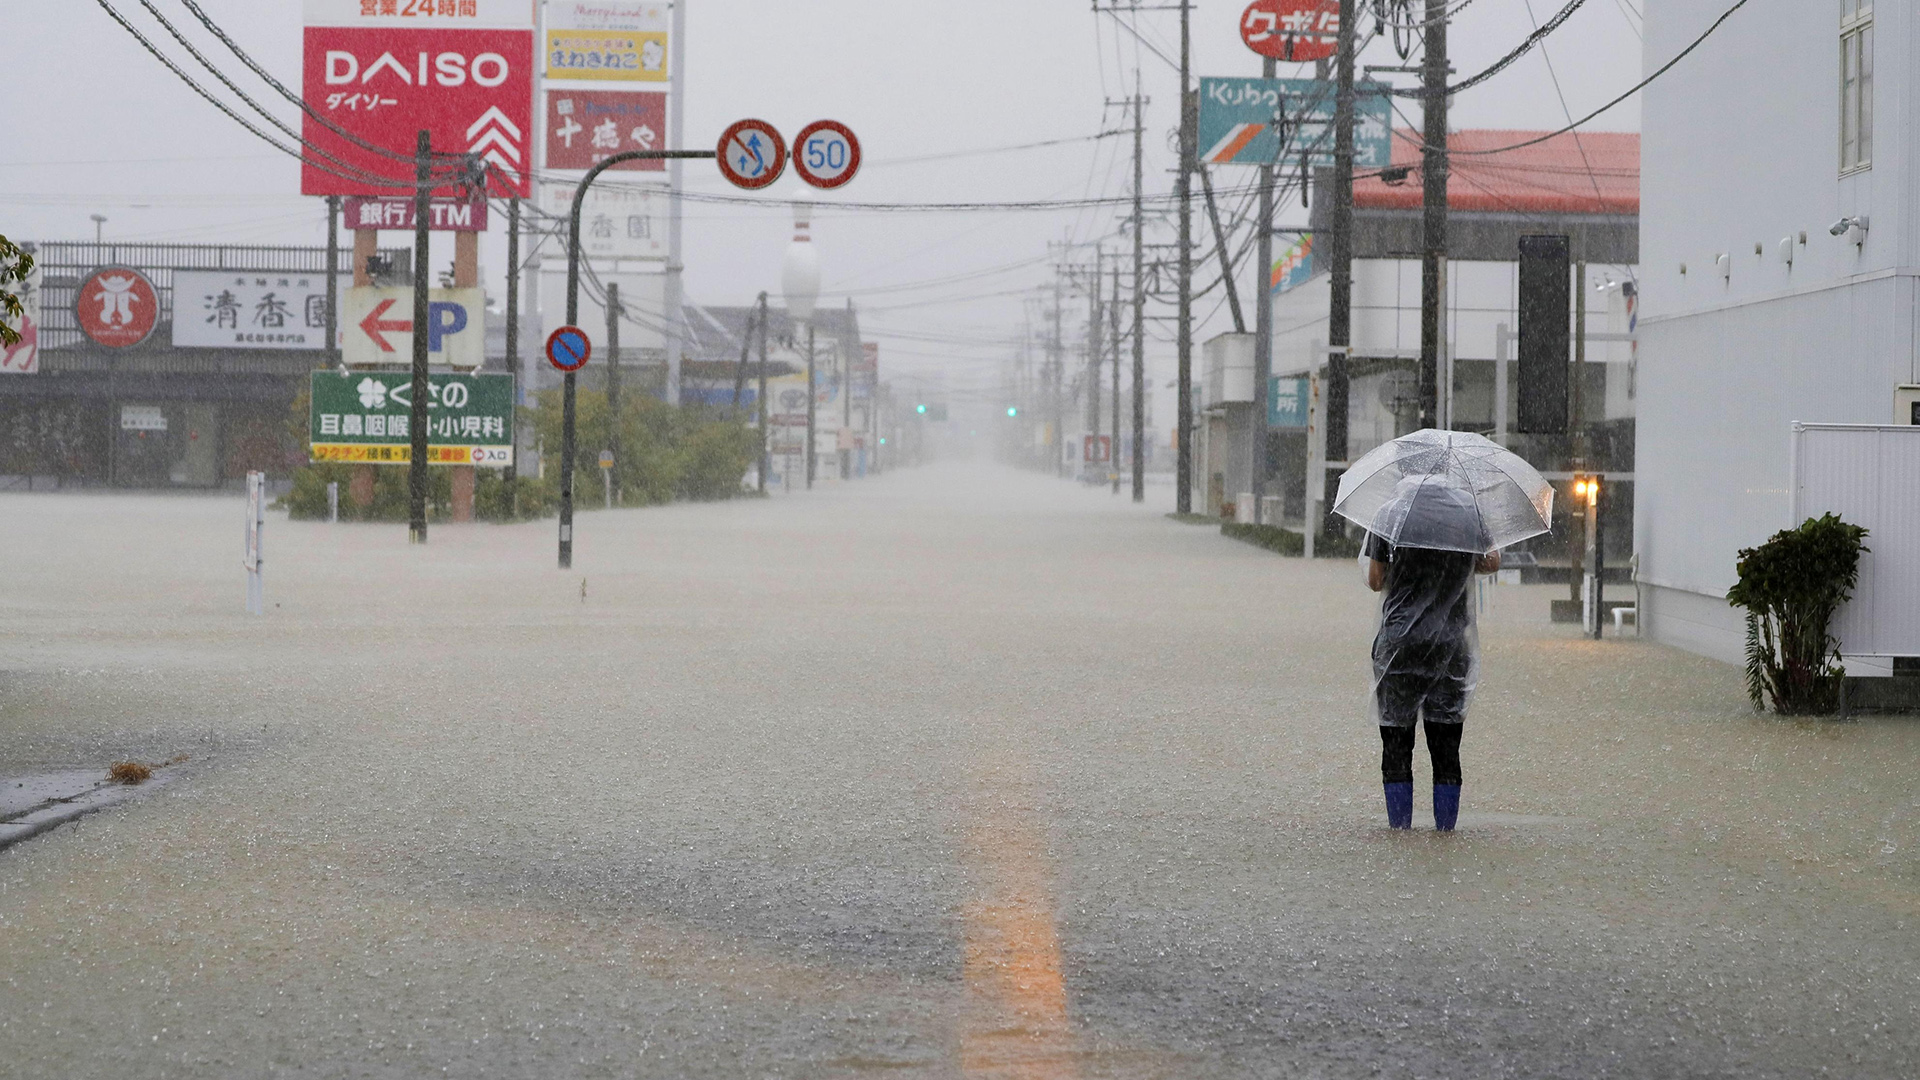 Eine überschwemmte Straße nach sintflutartigen Regenfällen in Takeo, Präfektur Saga, Japan  | via REUTERS